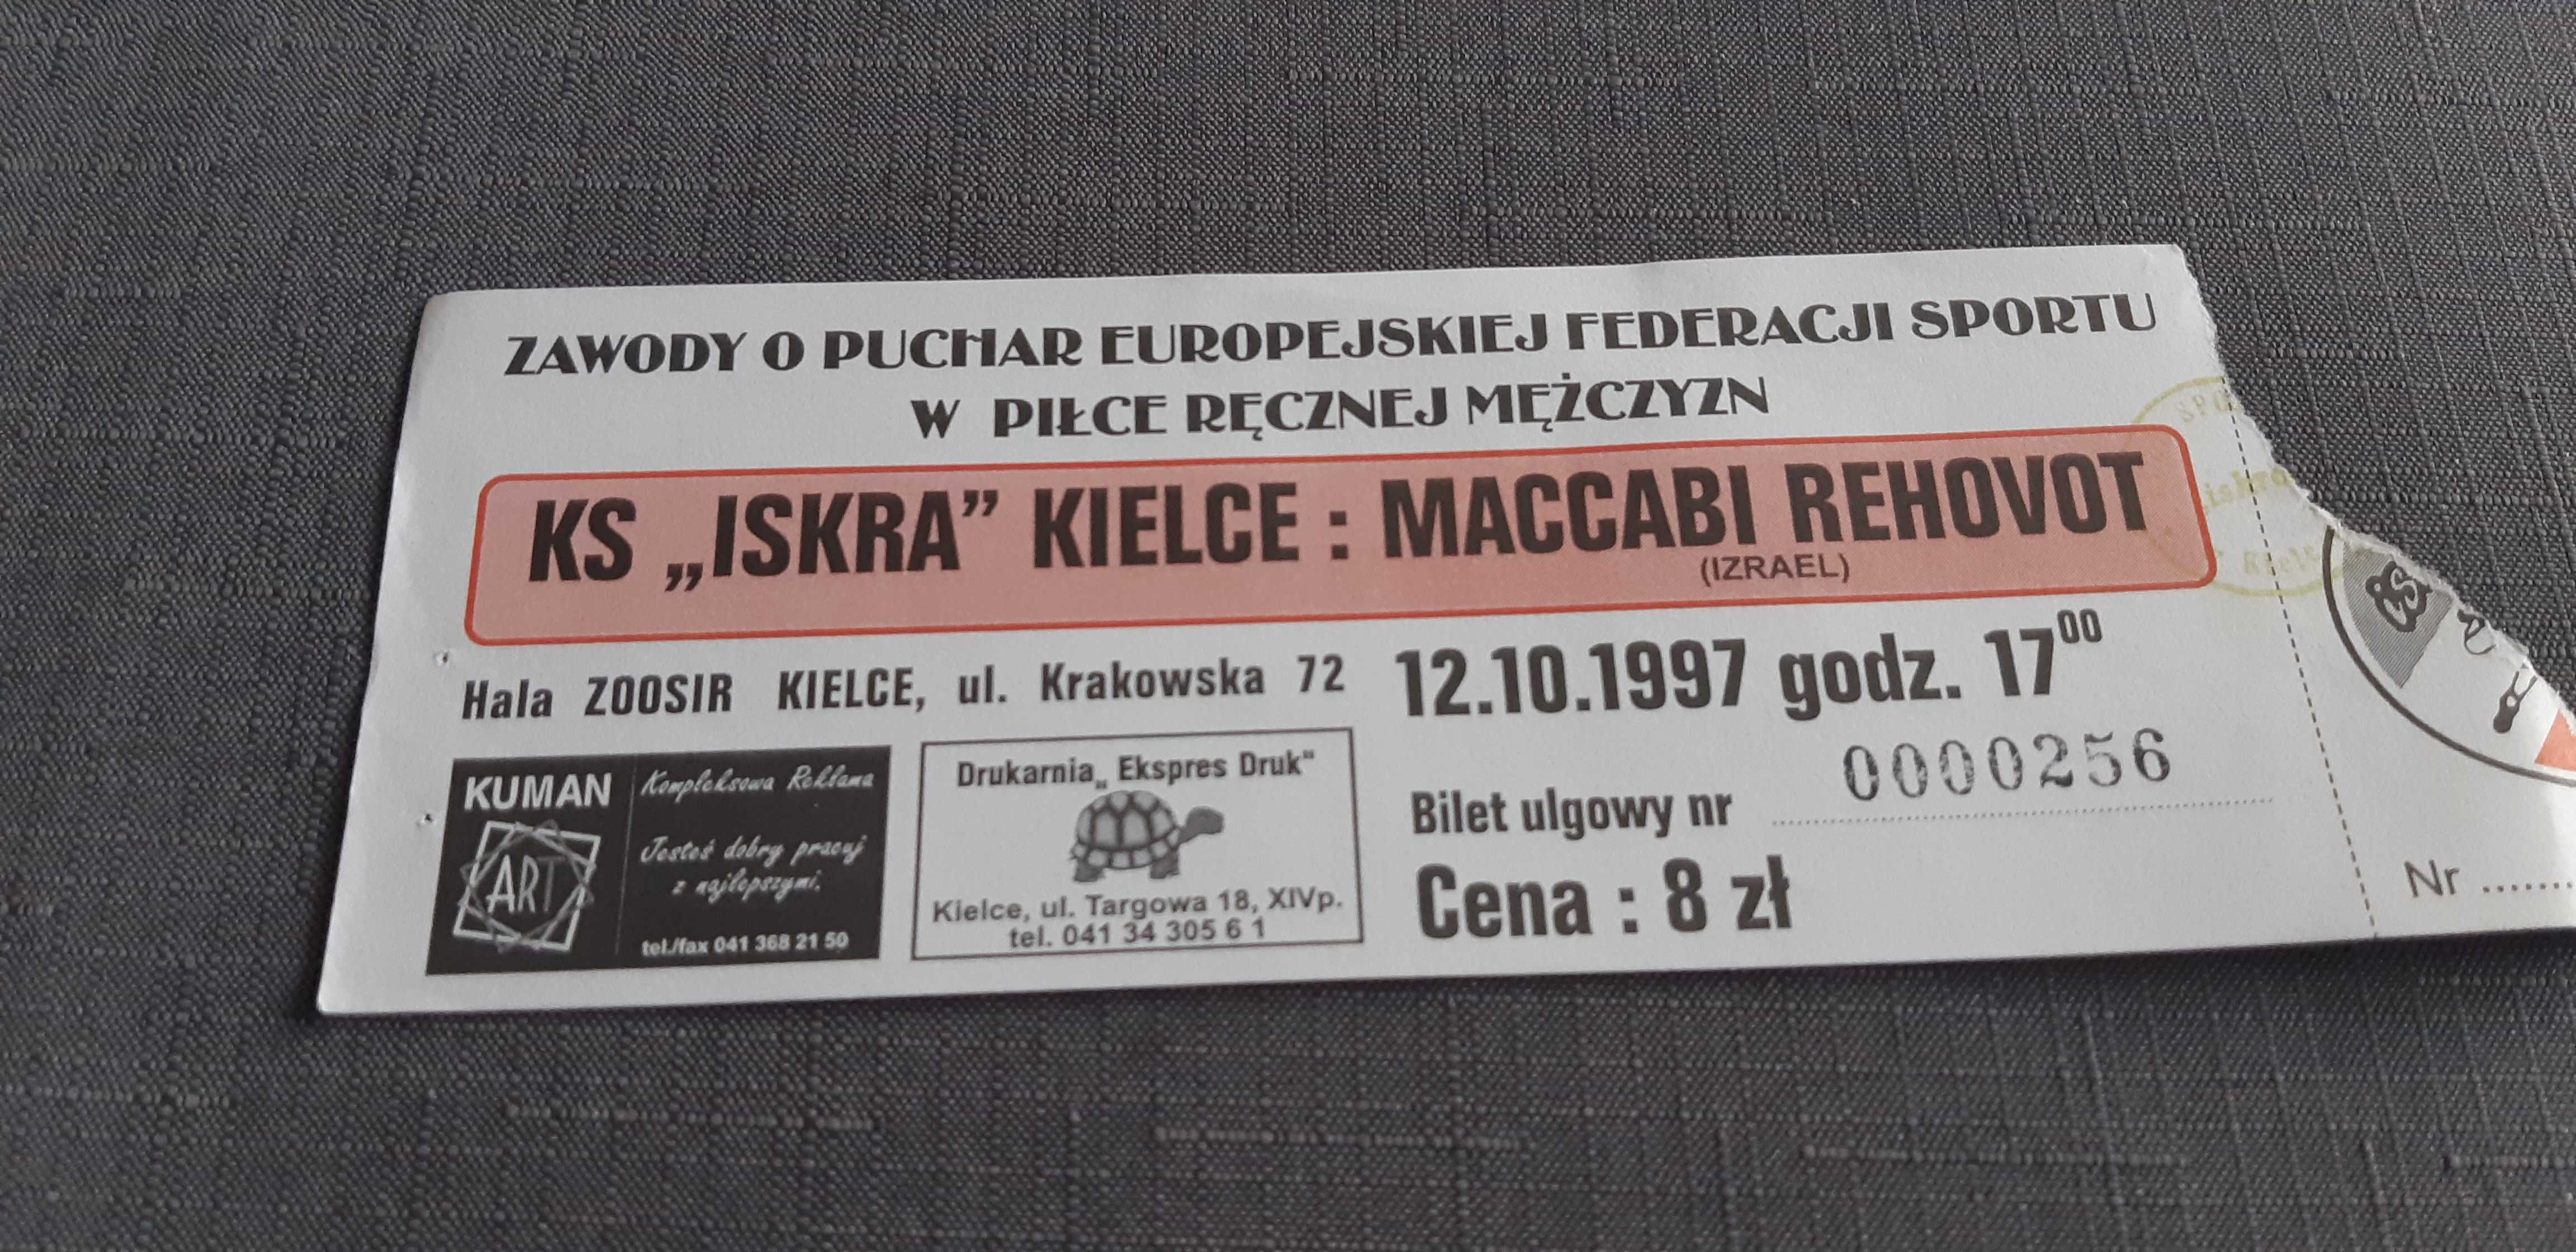 bilet z meczu KS Iskra Kielce -Maccabi Rehovot Izrael 12.10.1997